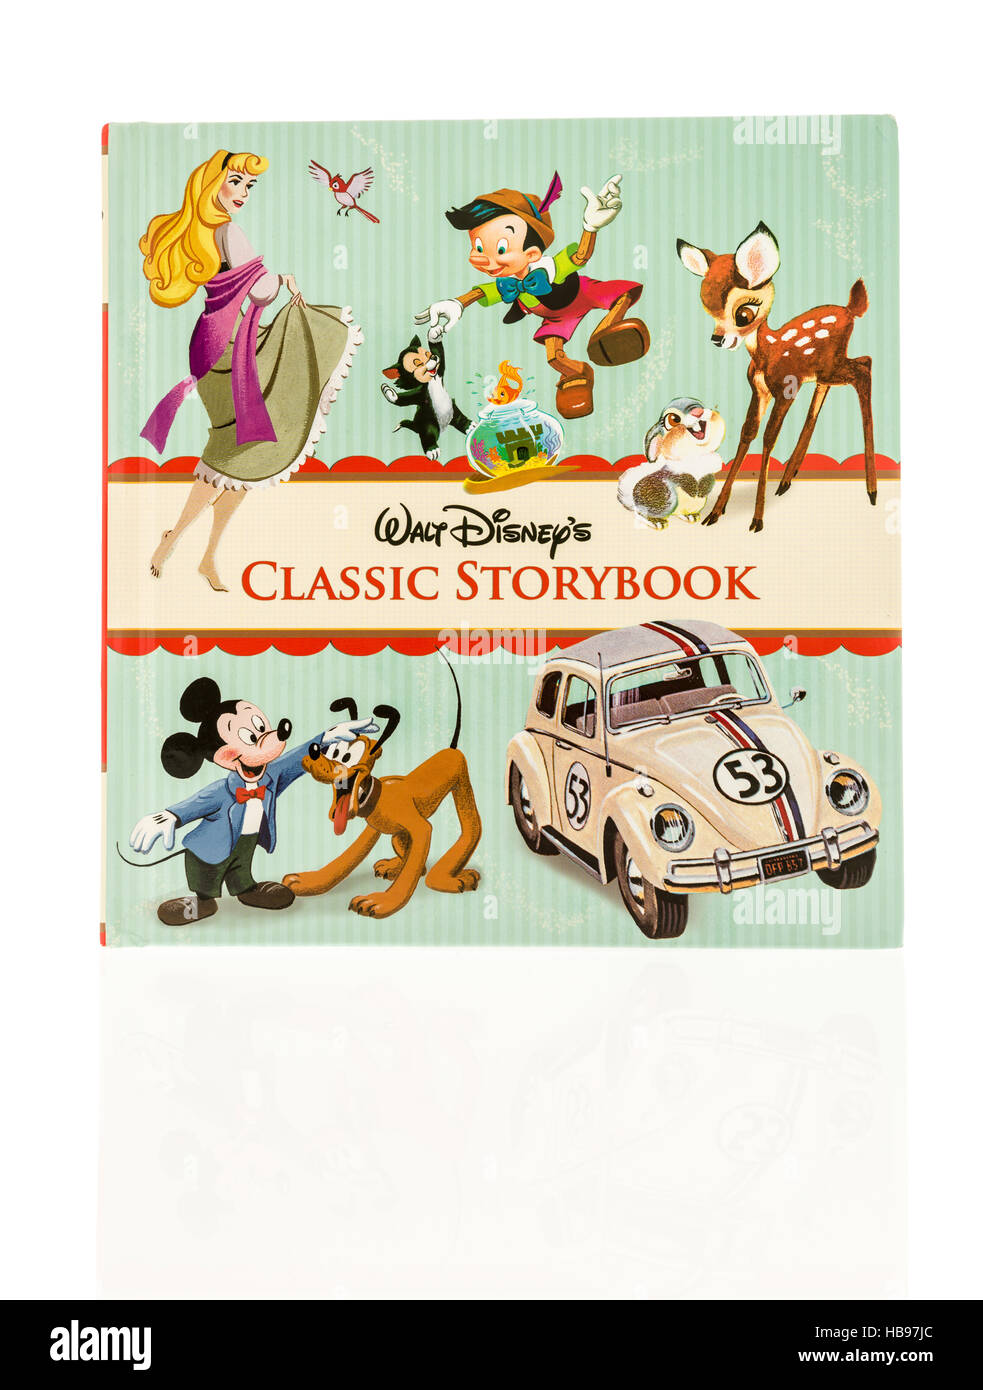 Winneconne, Wisconsin - 30. November 2016: Walt Disney Klassiker Märchenbuch Containgin Geschichten der klassischen Disney Charaktere auf einem isolierten Hintergrund. Stockfoto